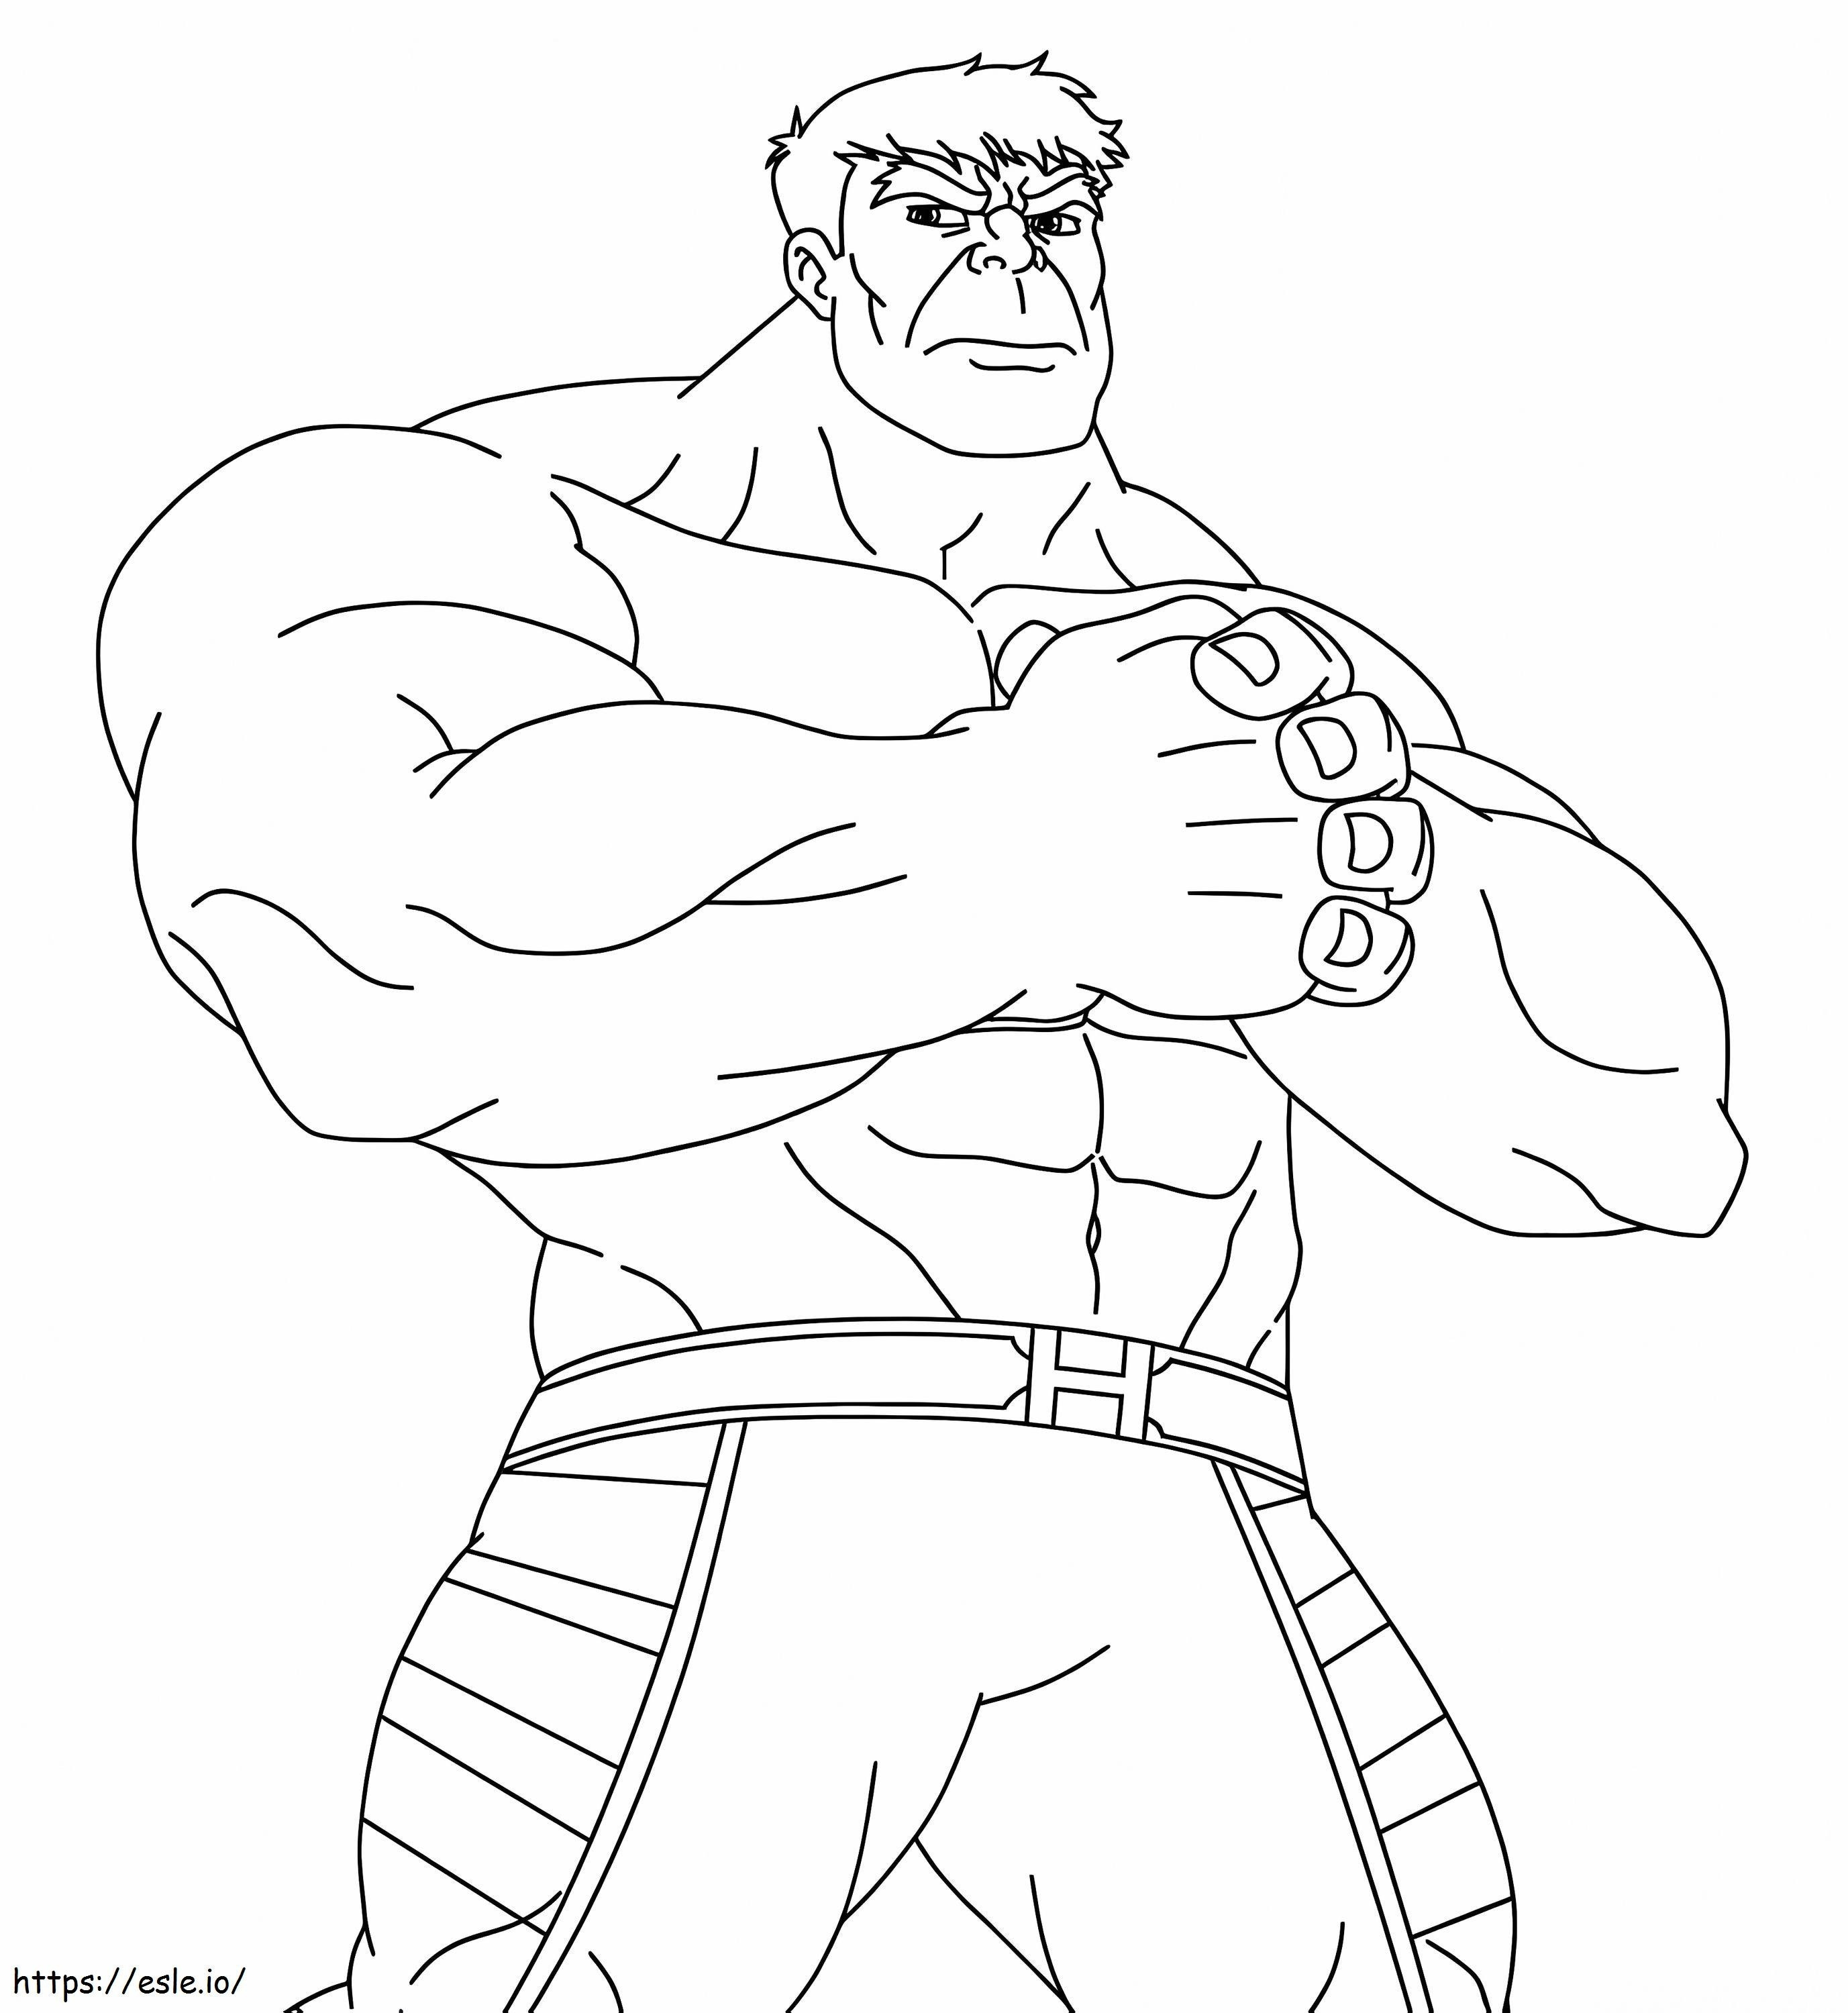 Hulk está listo para colorear